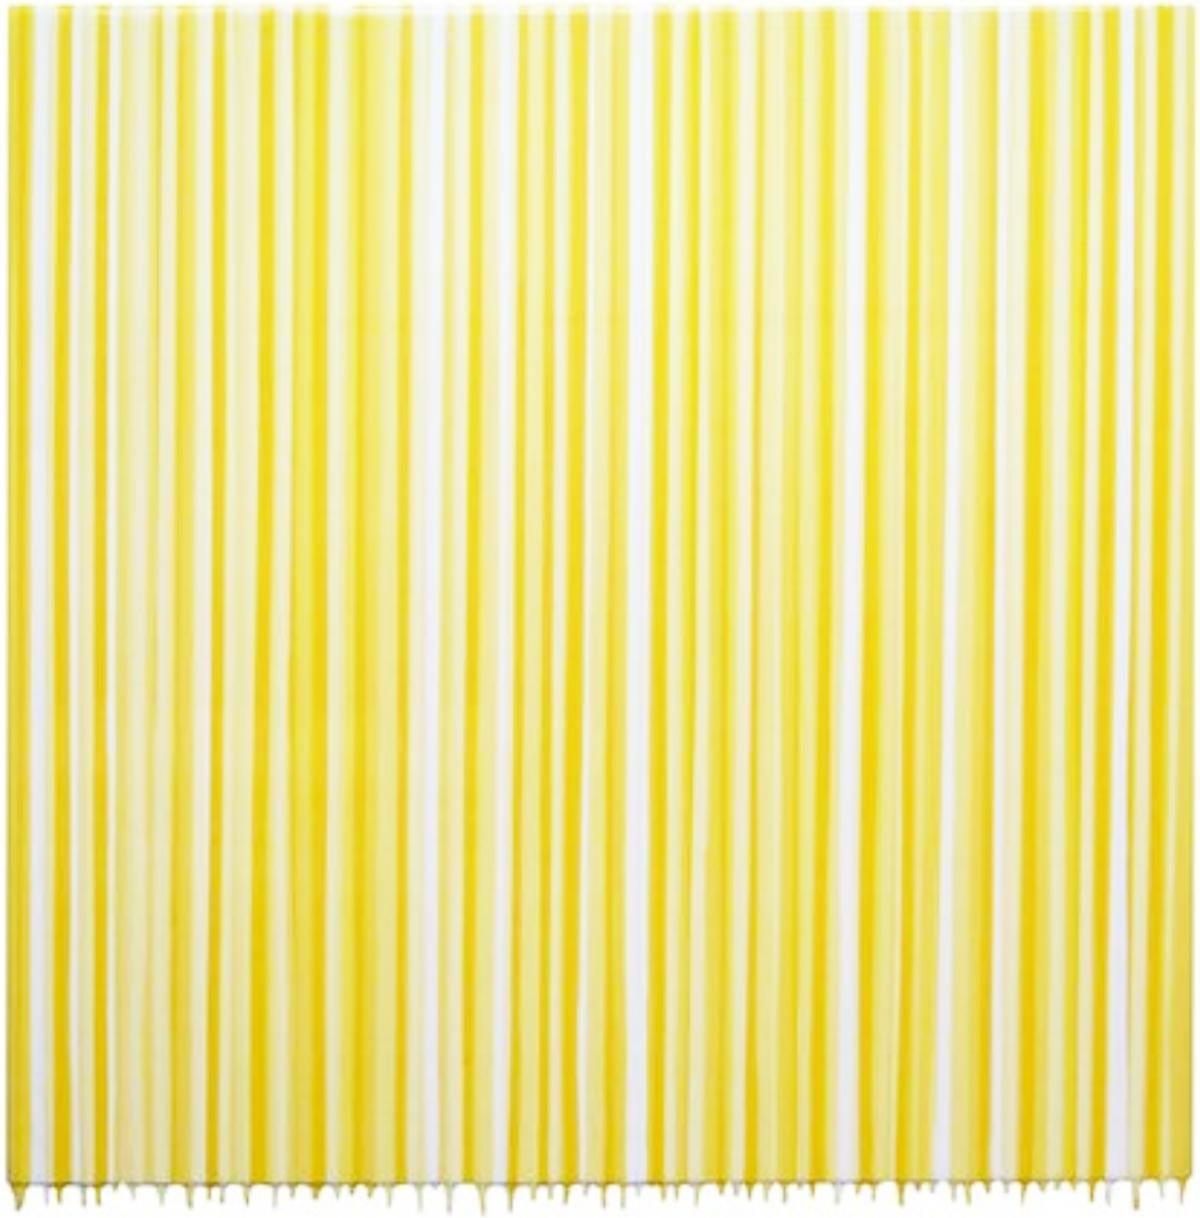 "Sister Golden Hair Surprise" Yellow Stripe Painting by Gian Garofalo 